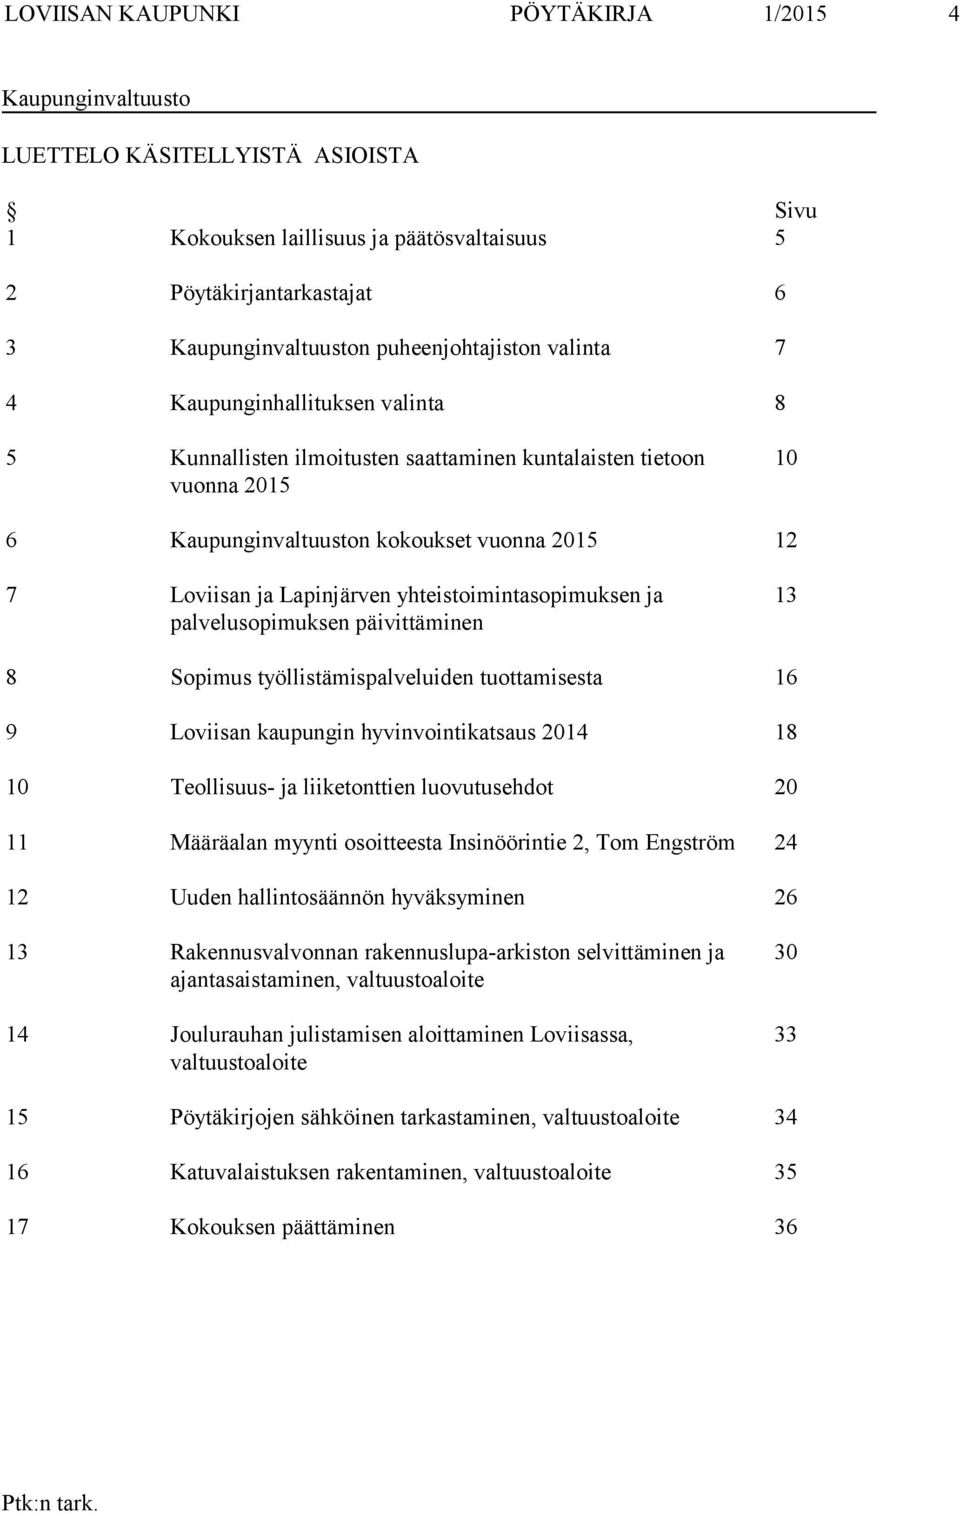 Lapinjärven yhteistoimintasopimuksen ja palvelusopimuksen päivittäminen 13 8 Sopimus työllistämispalveluiden tuottamisesta 16 9 Loviisan kaupungin hyvinvointikatsaus 2014 18 10 Teollisuus- ja